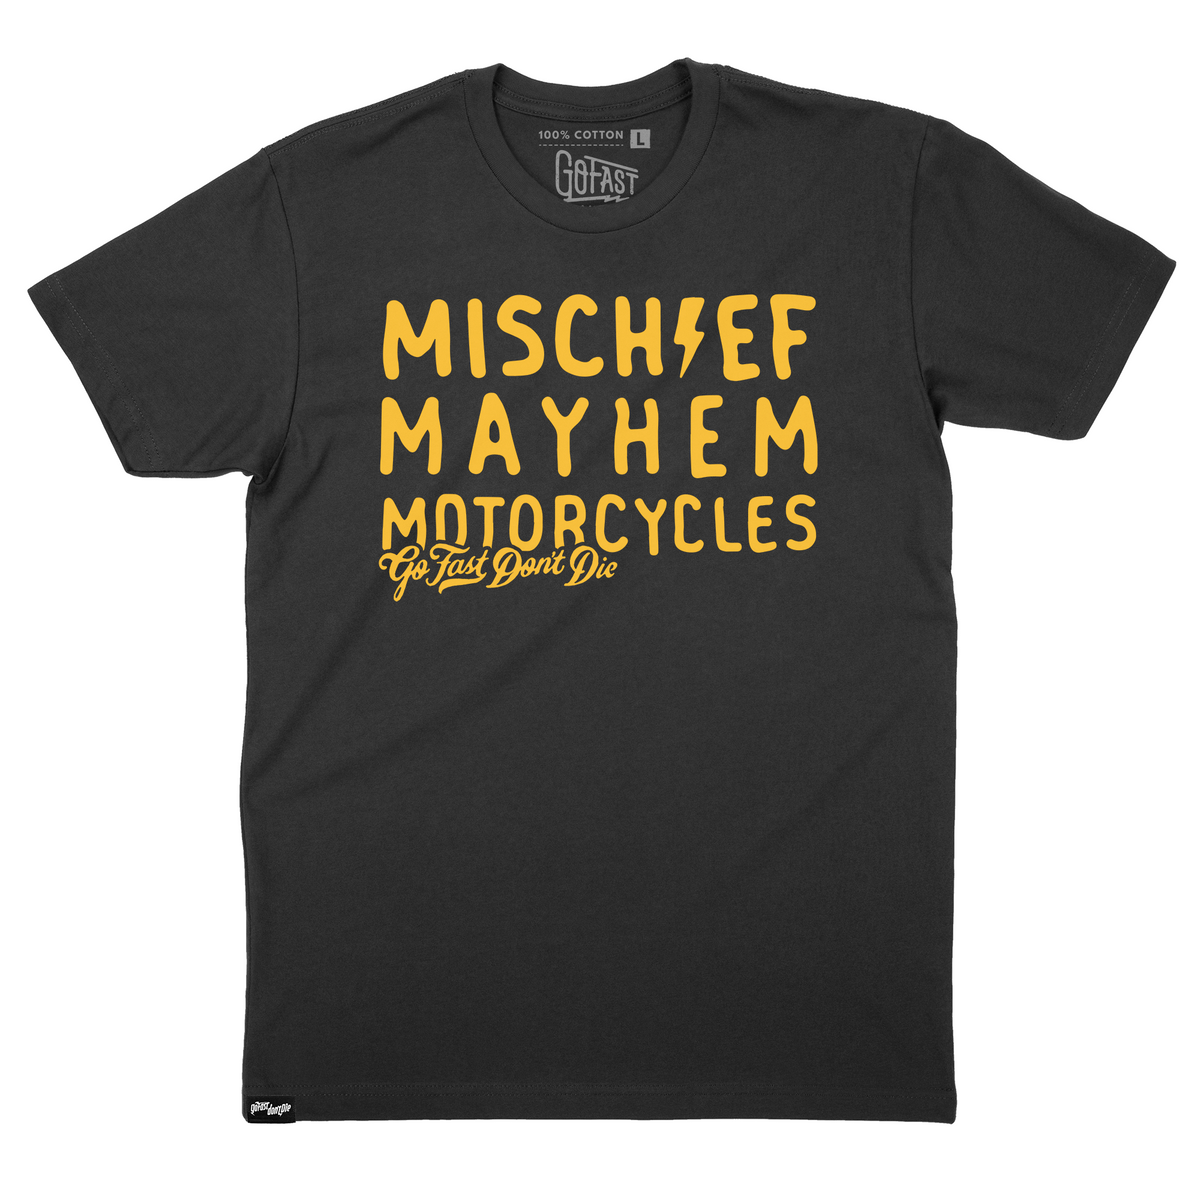 Mischief Mayhem Motorcycles Tee – Go Fast Don't Die